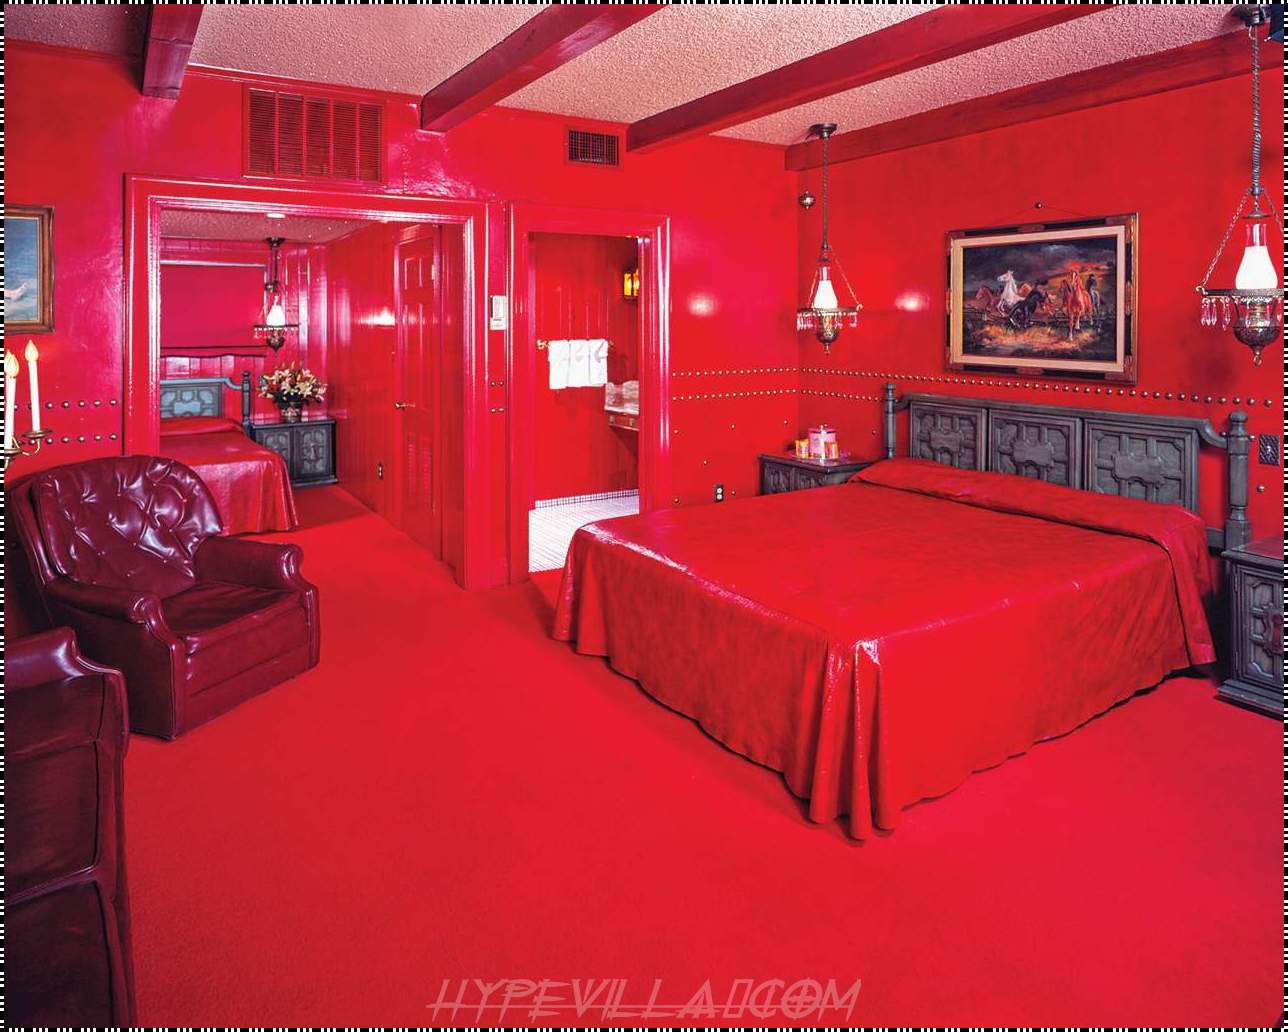 Комната удовлетворения. Ред рум. Red Room" красная комната  (1999) ужасы ". Комната в красных тонах. Комната с красными стенами.